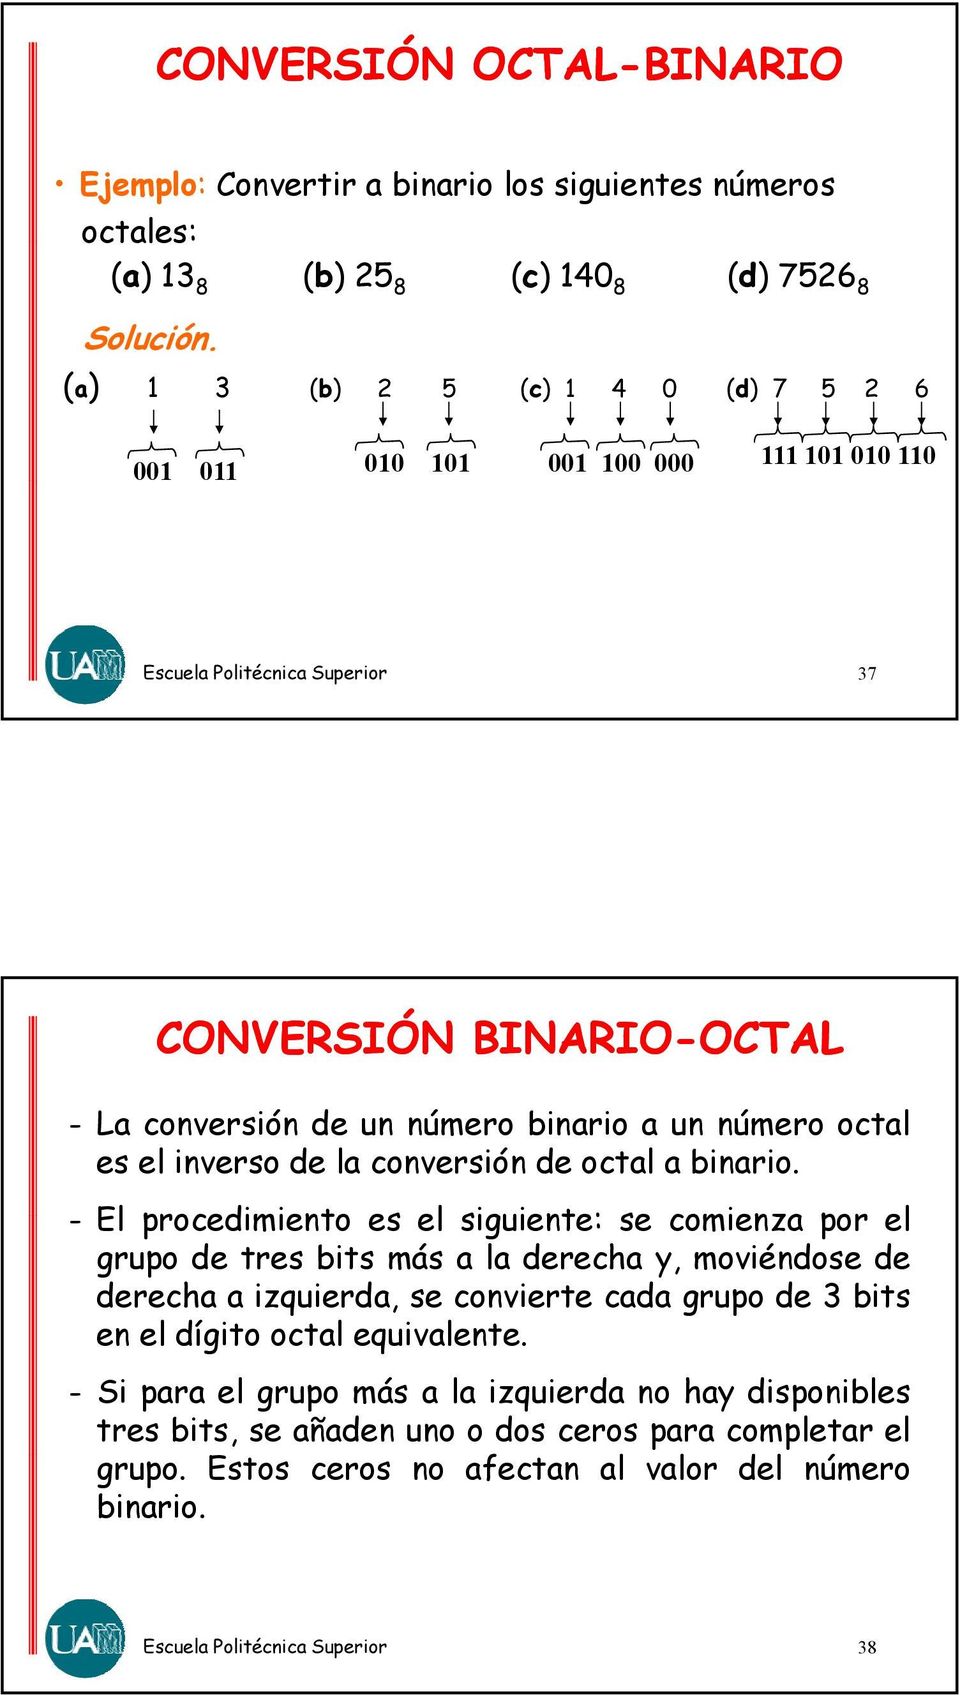 la conversión de octal a binario.